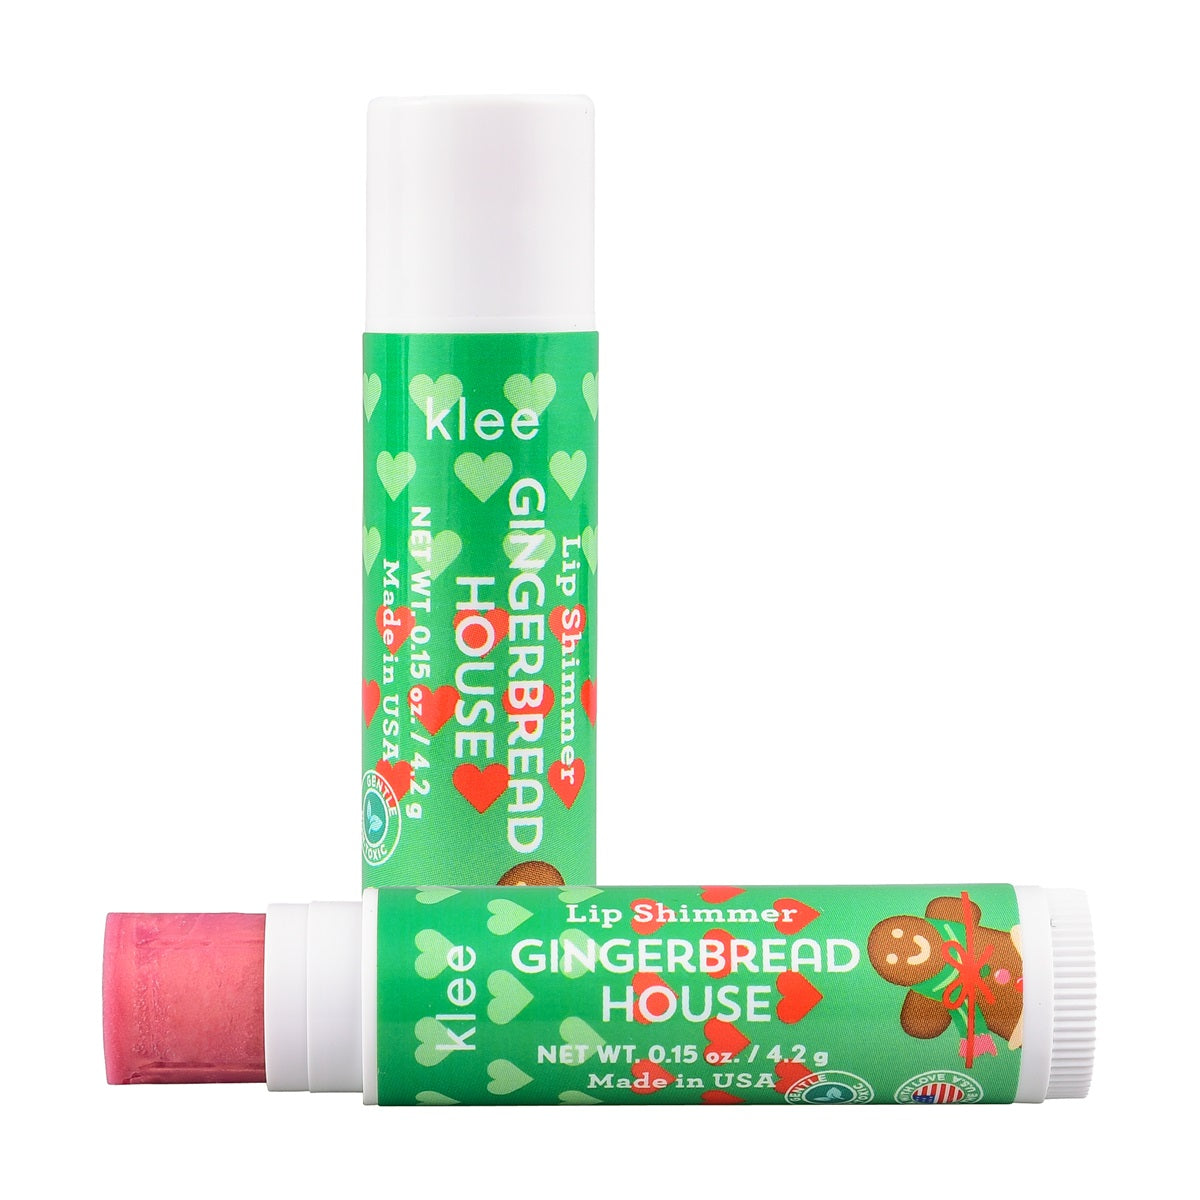 Klee Naturals - Xmas Edition - Natural Mineral Eyeshadow &amp; Lip Shimmer Duo 聖誕版 - 天然礦物眼影及唇蜜組合 (Jingle Shimmer)